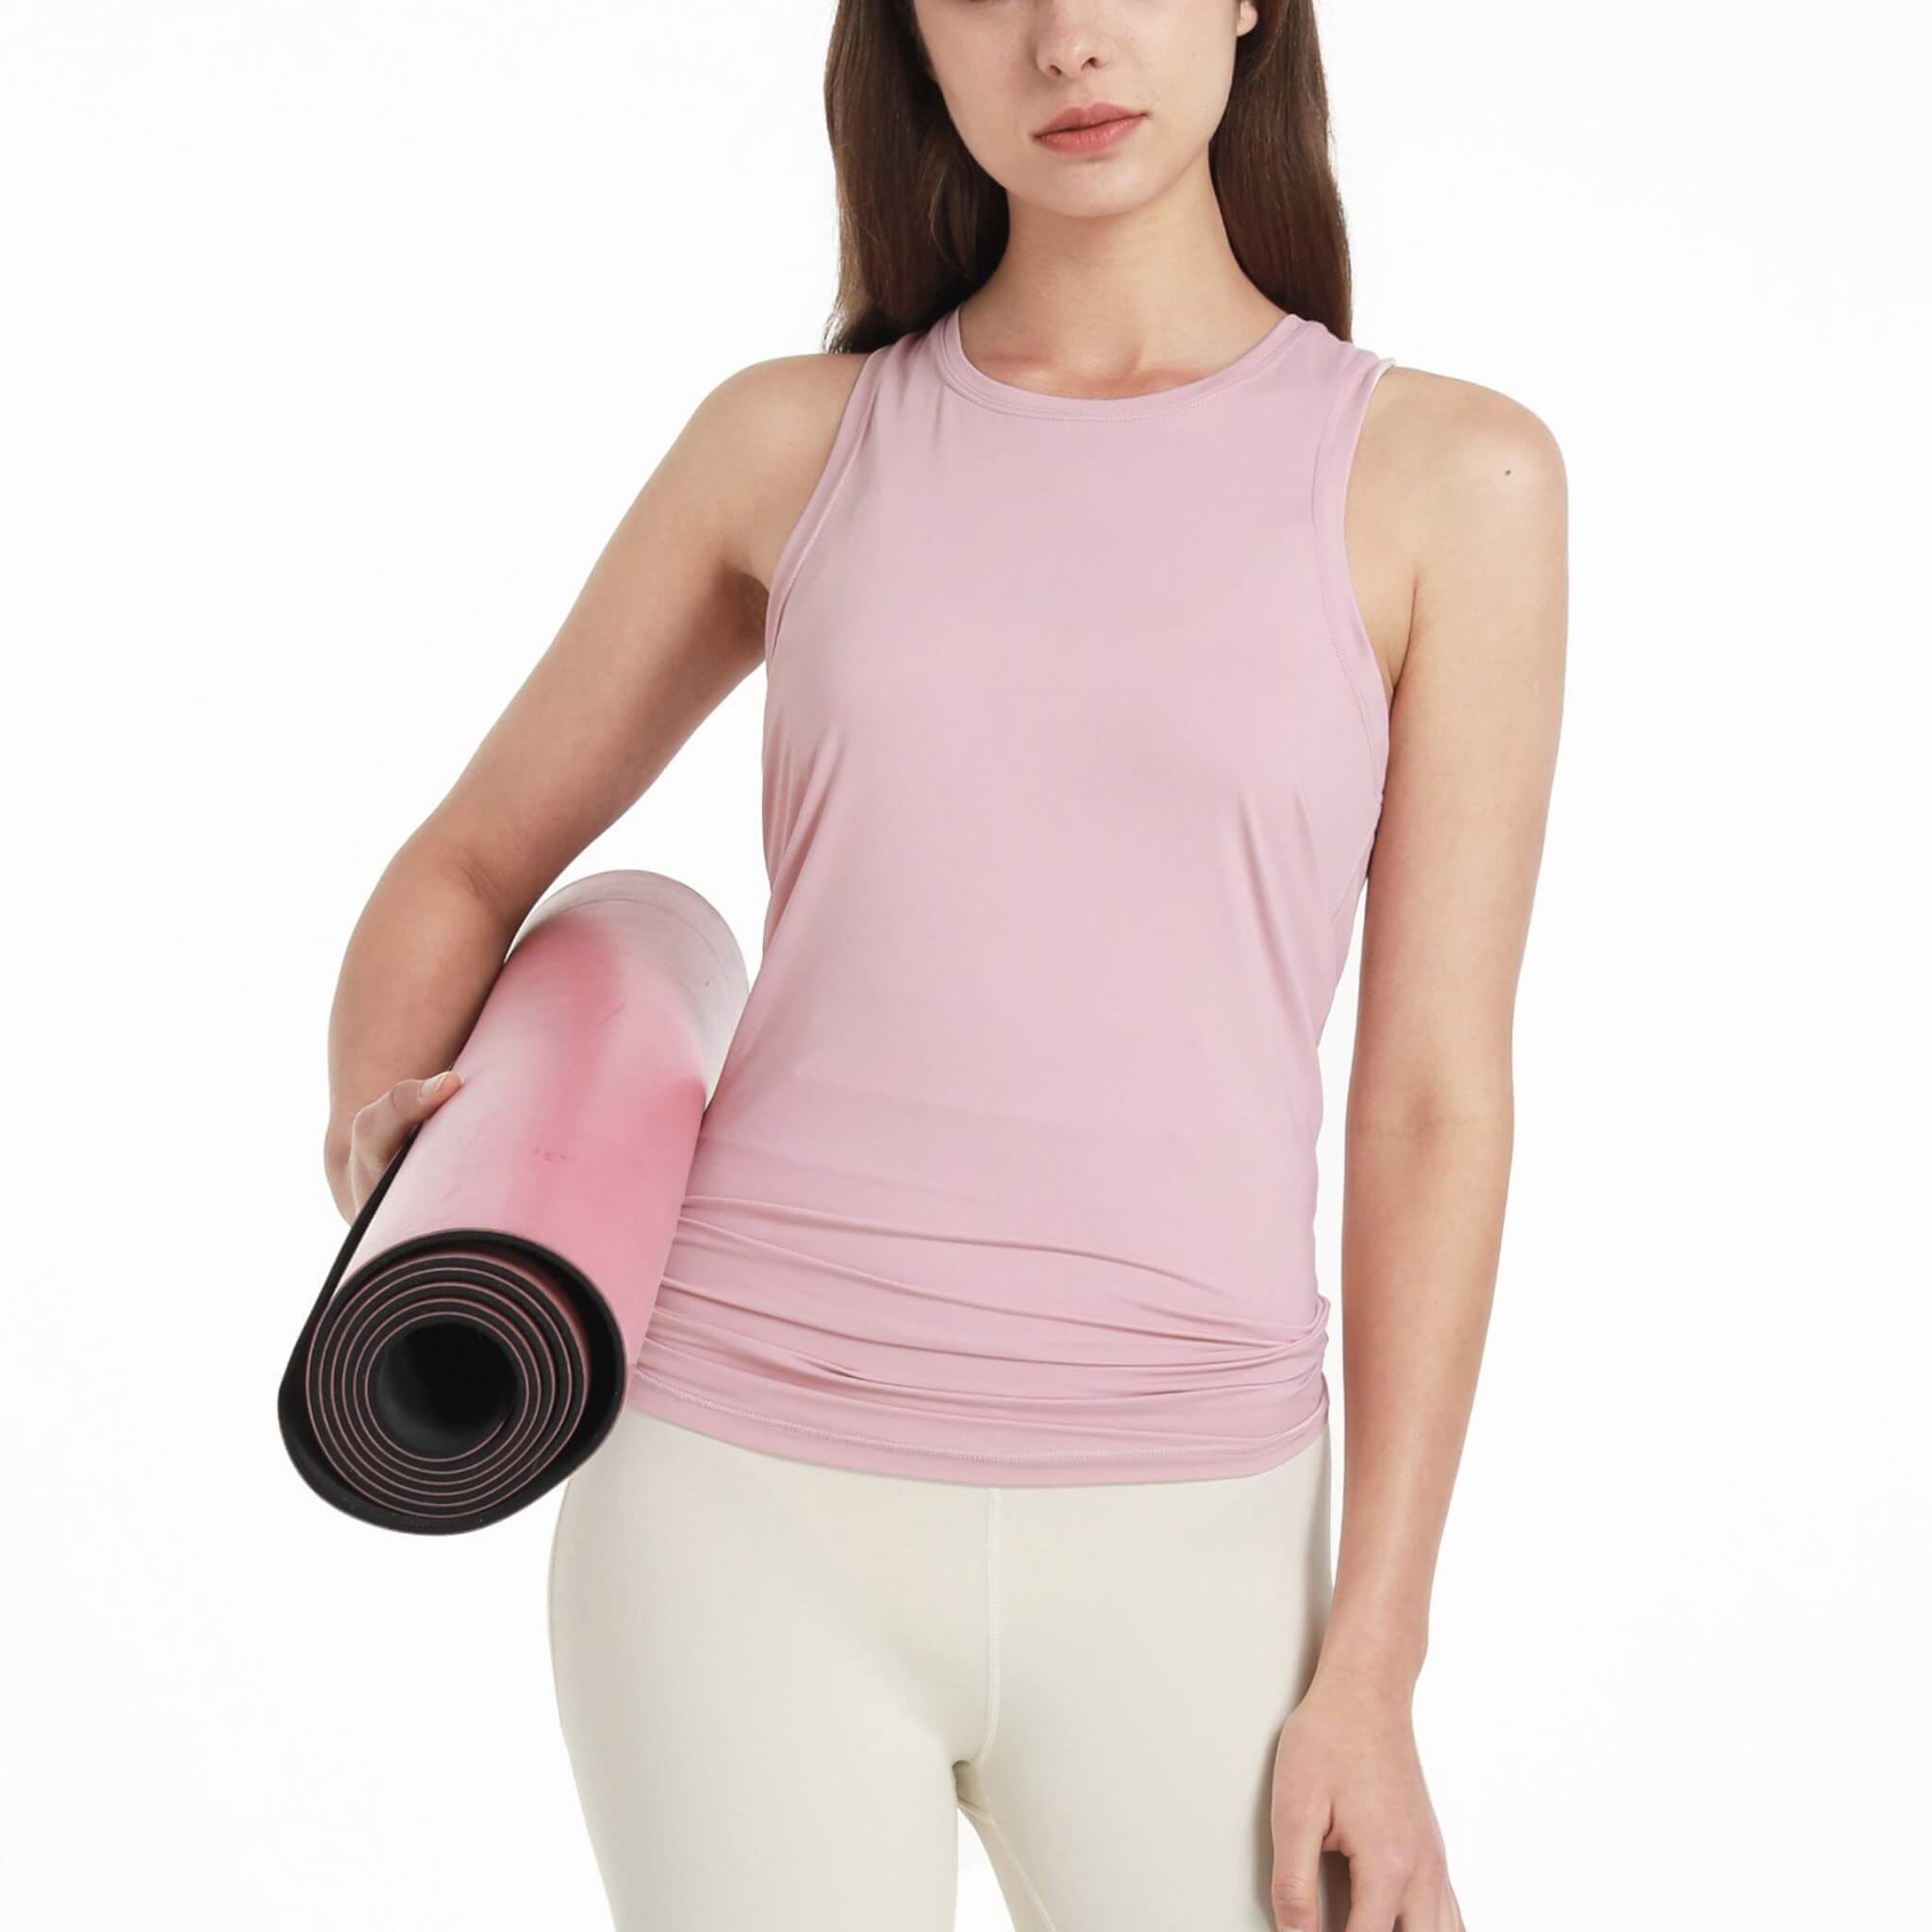 Women's Sports Yoga Tank 4 Colors  UponBasics   